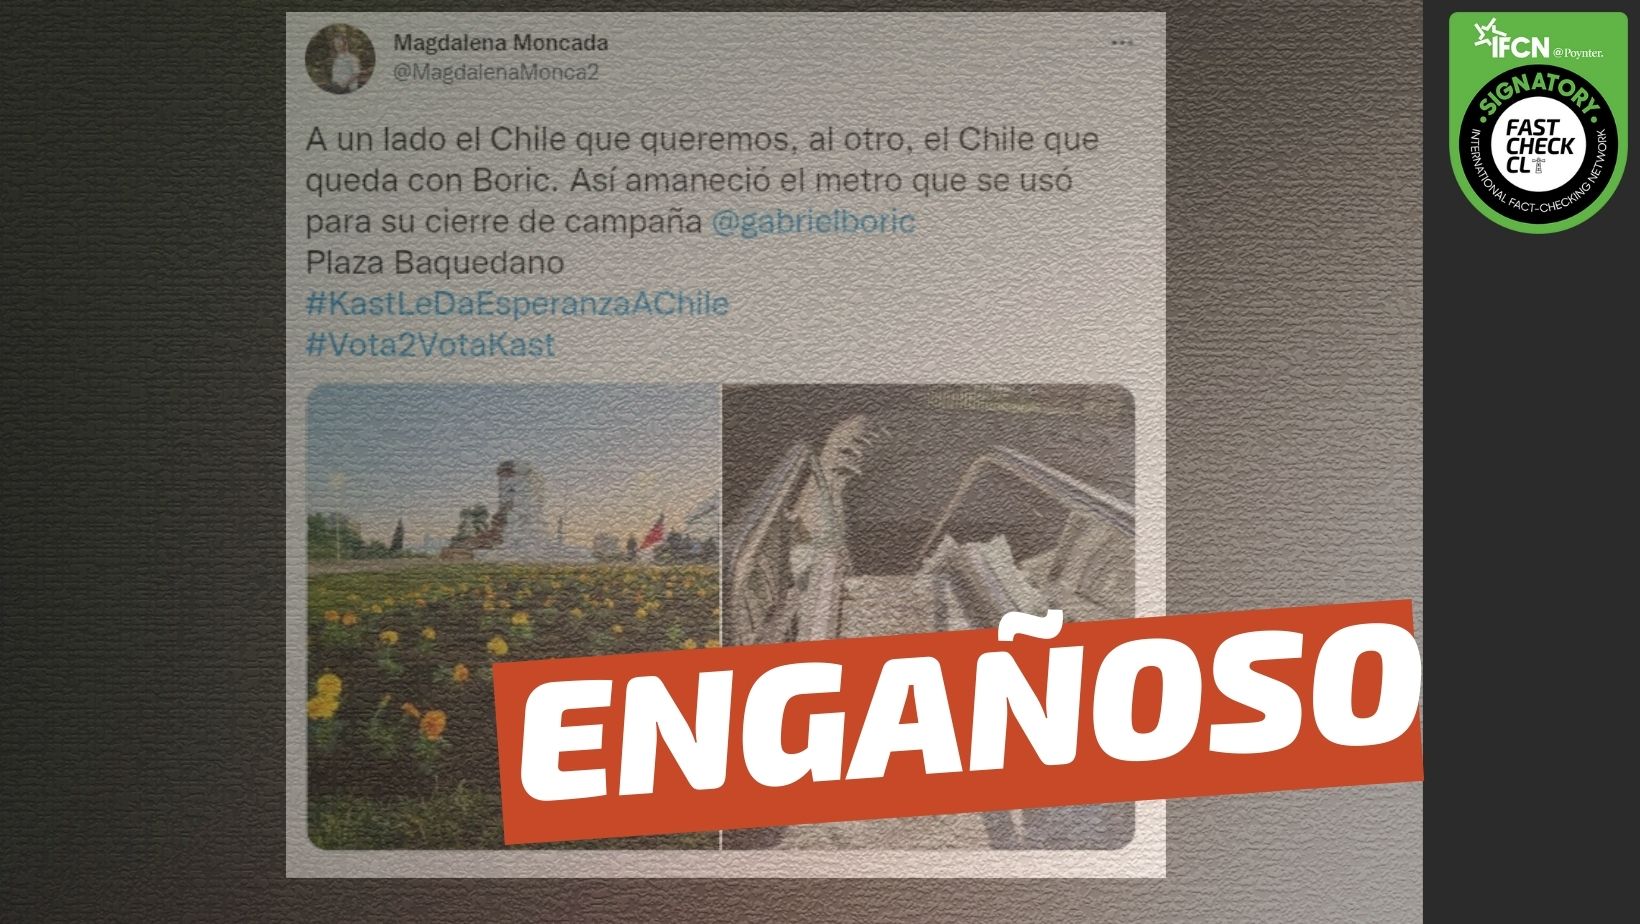 You are currently viewing “Así amaneció el metro que se usó para el cierre de campaña de Gabriel Boric”: #Engañoso